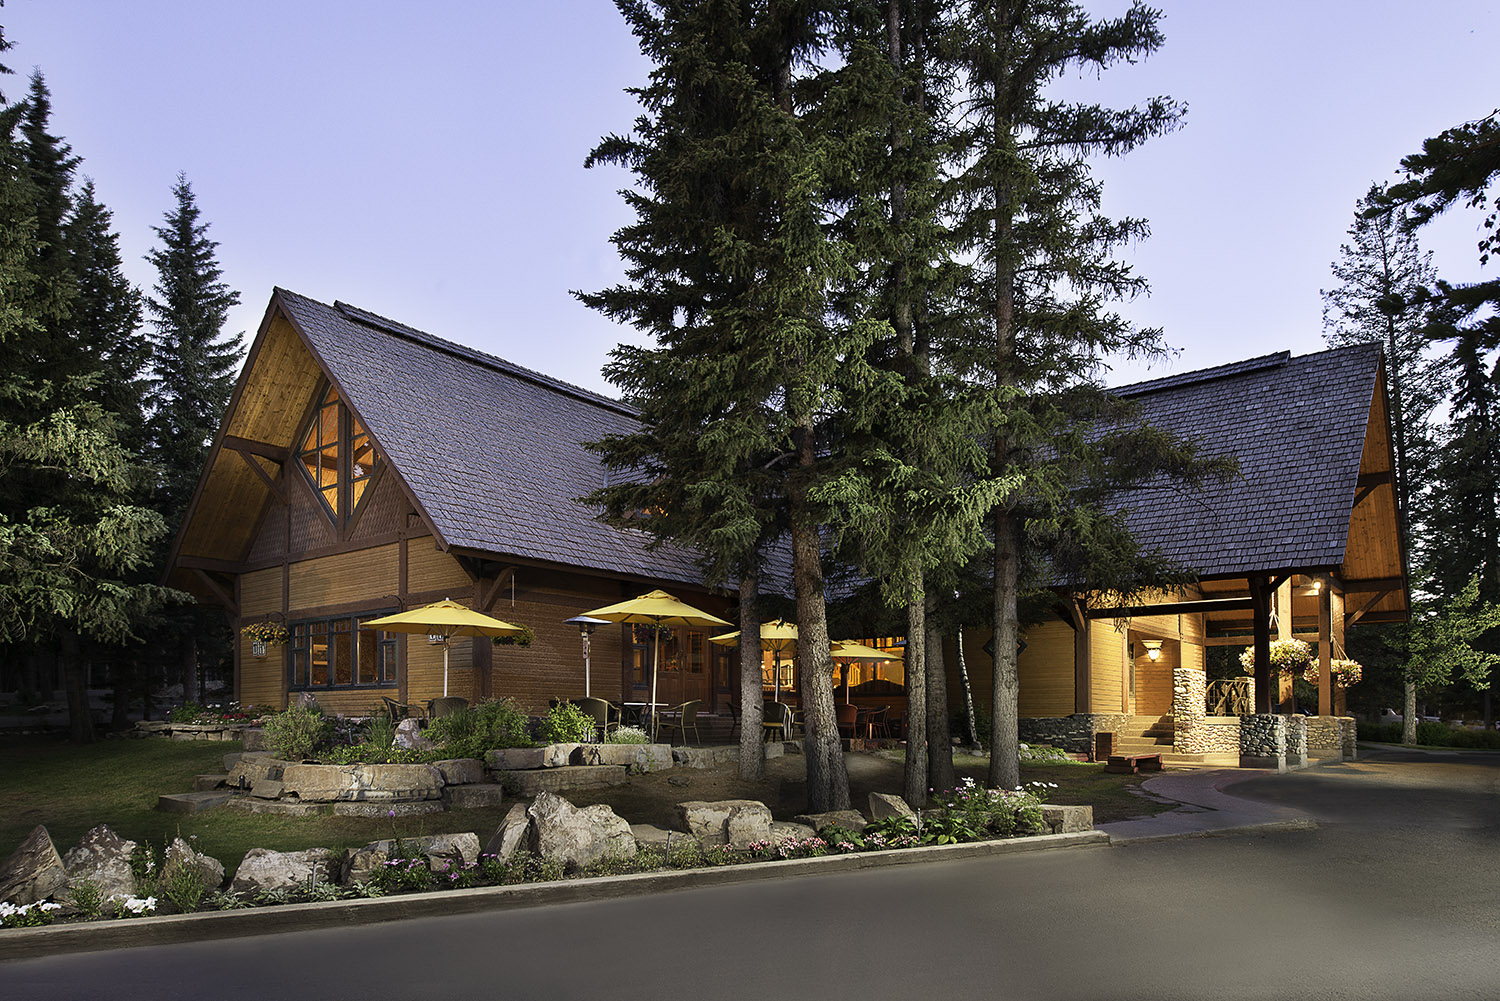 Buffalo Mountain Lodge Banff